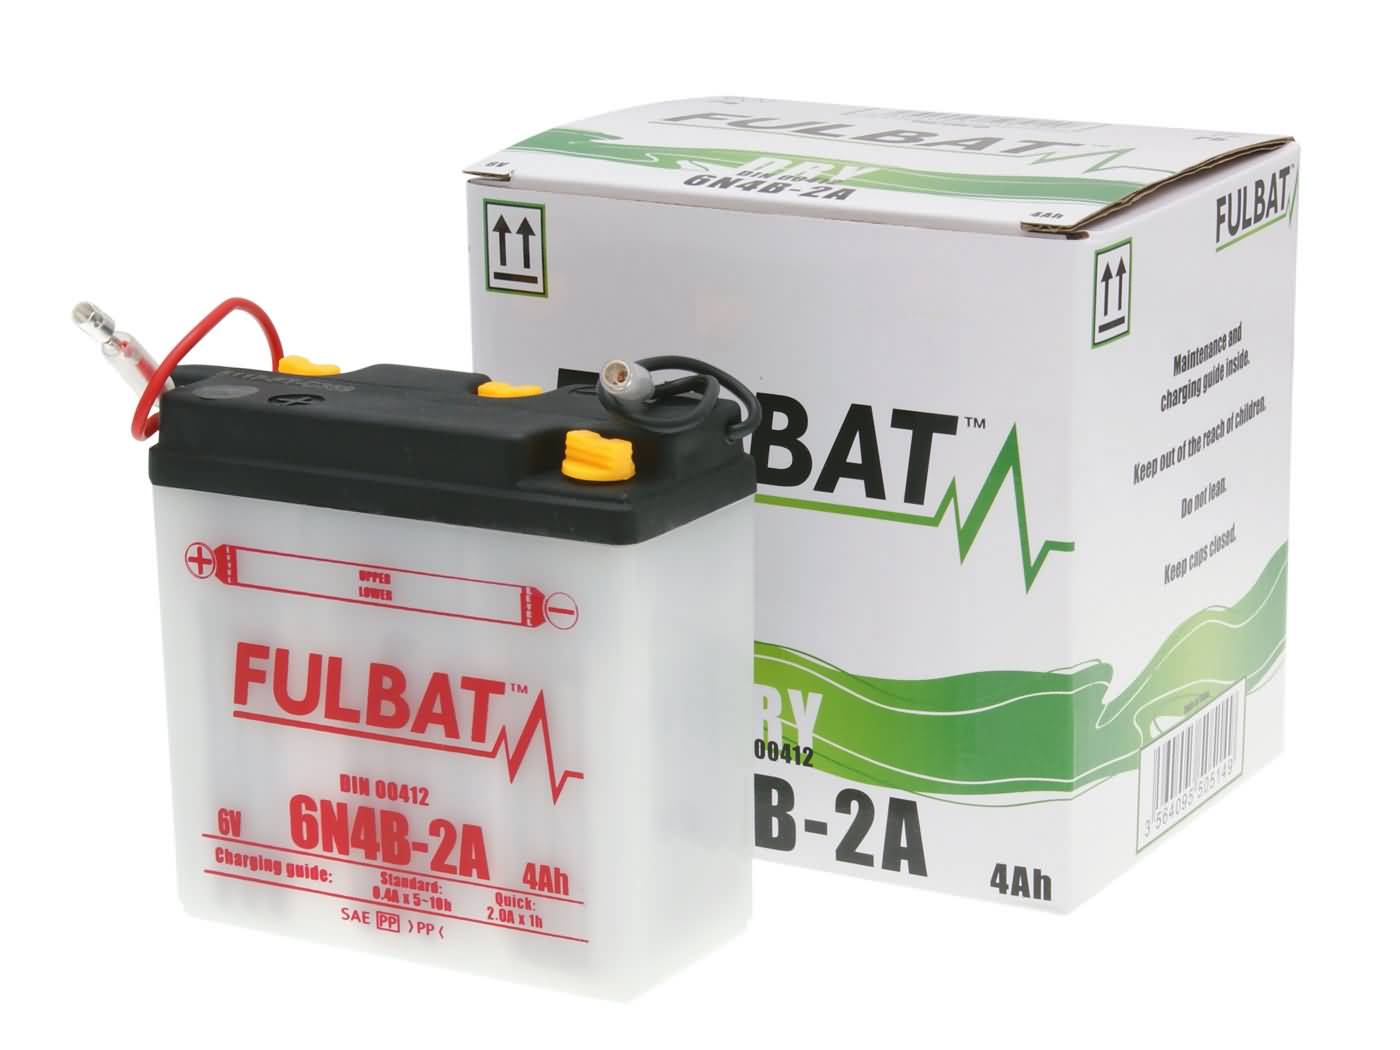 Fulbat 6V 6N4B-2A DRY Batterie